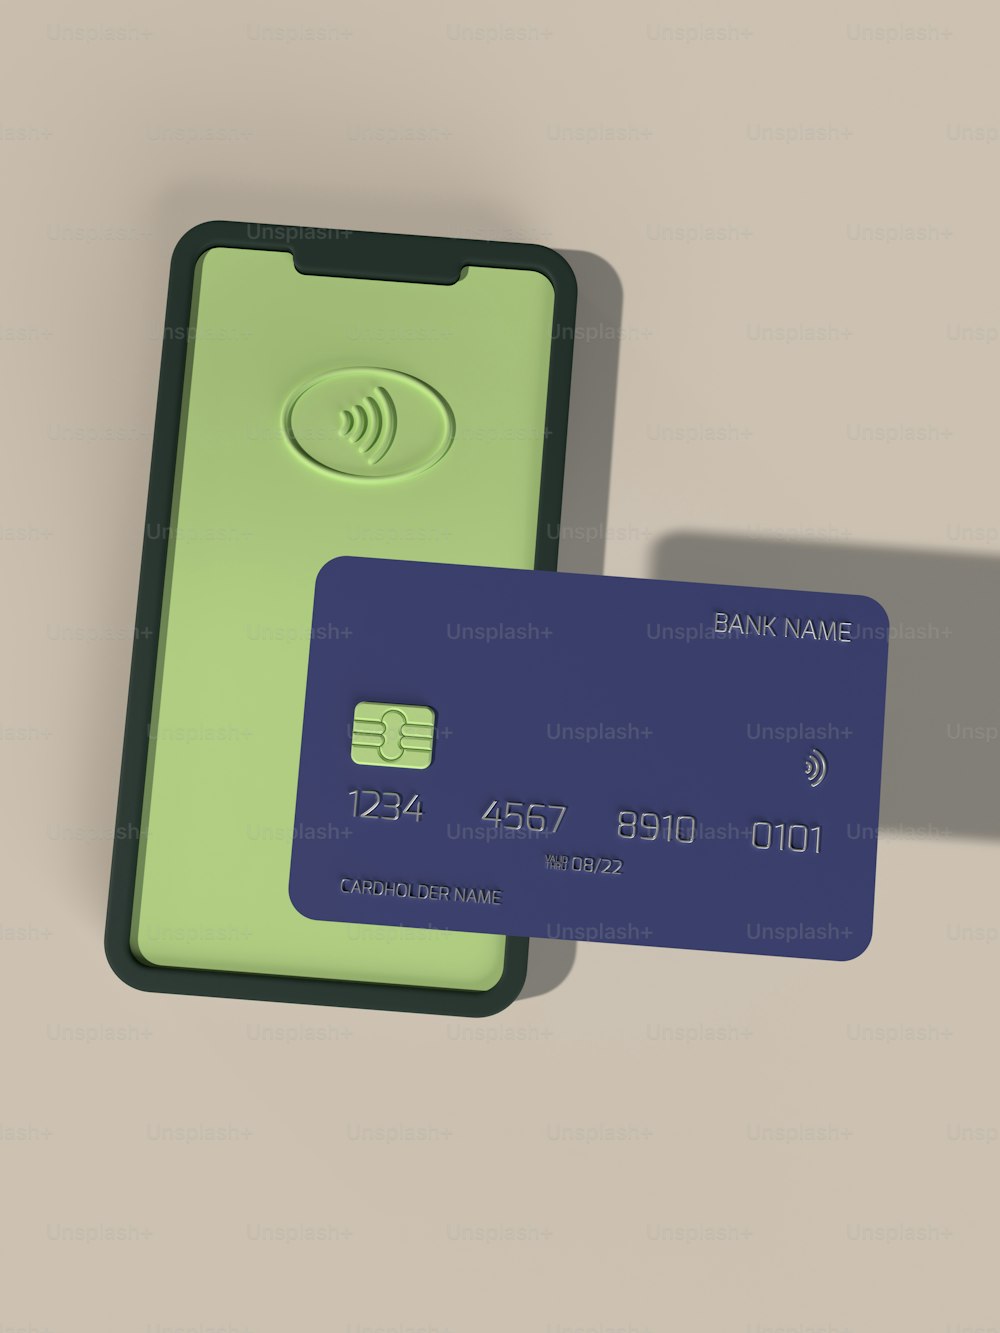 隣り合って座っている緑と青のクレジットカード